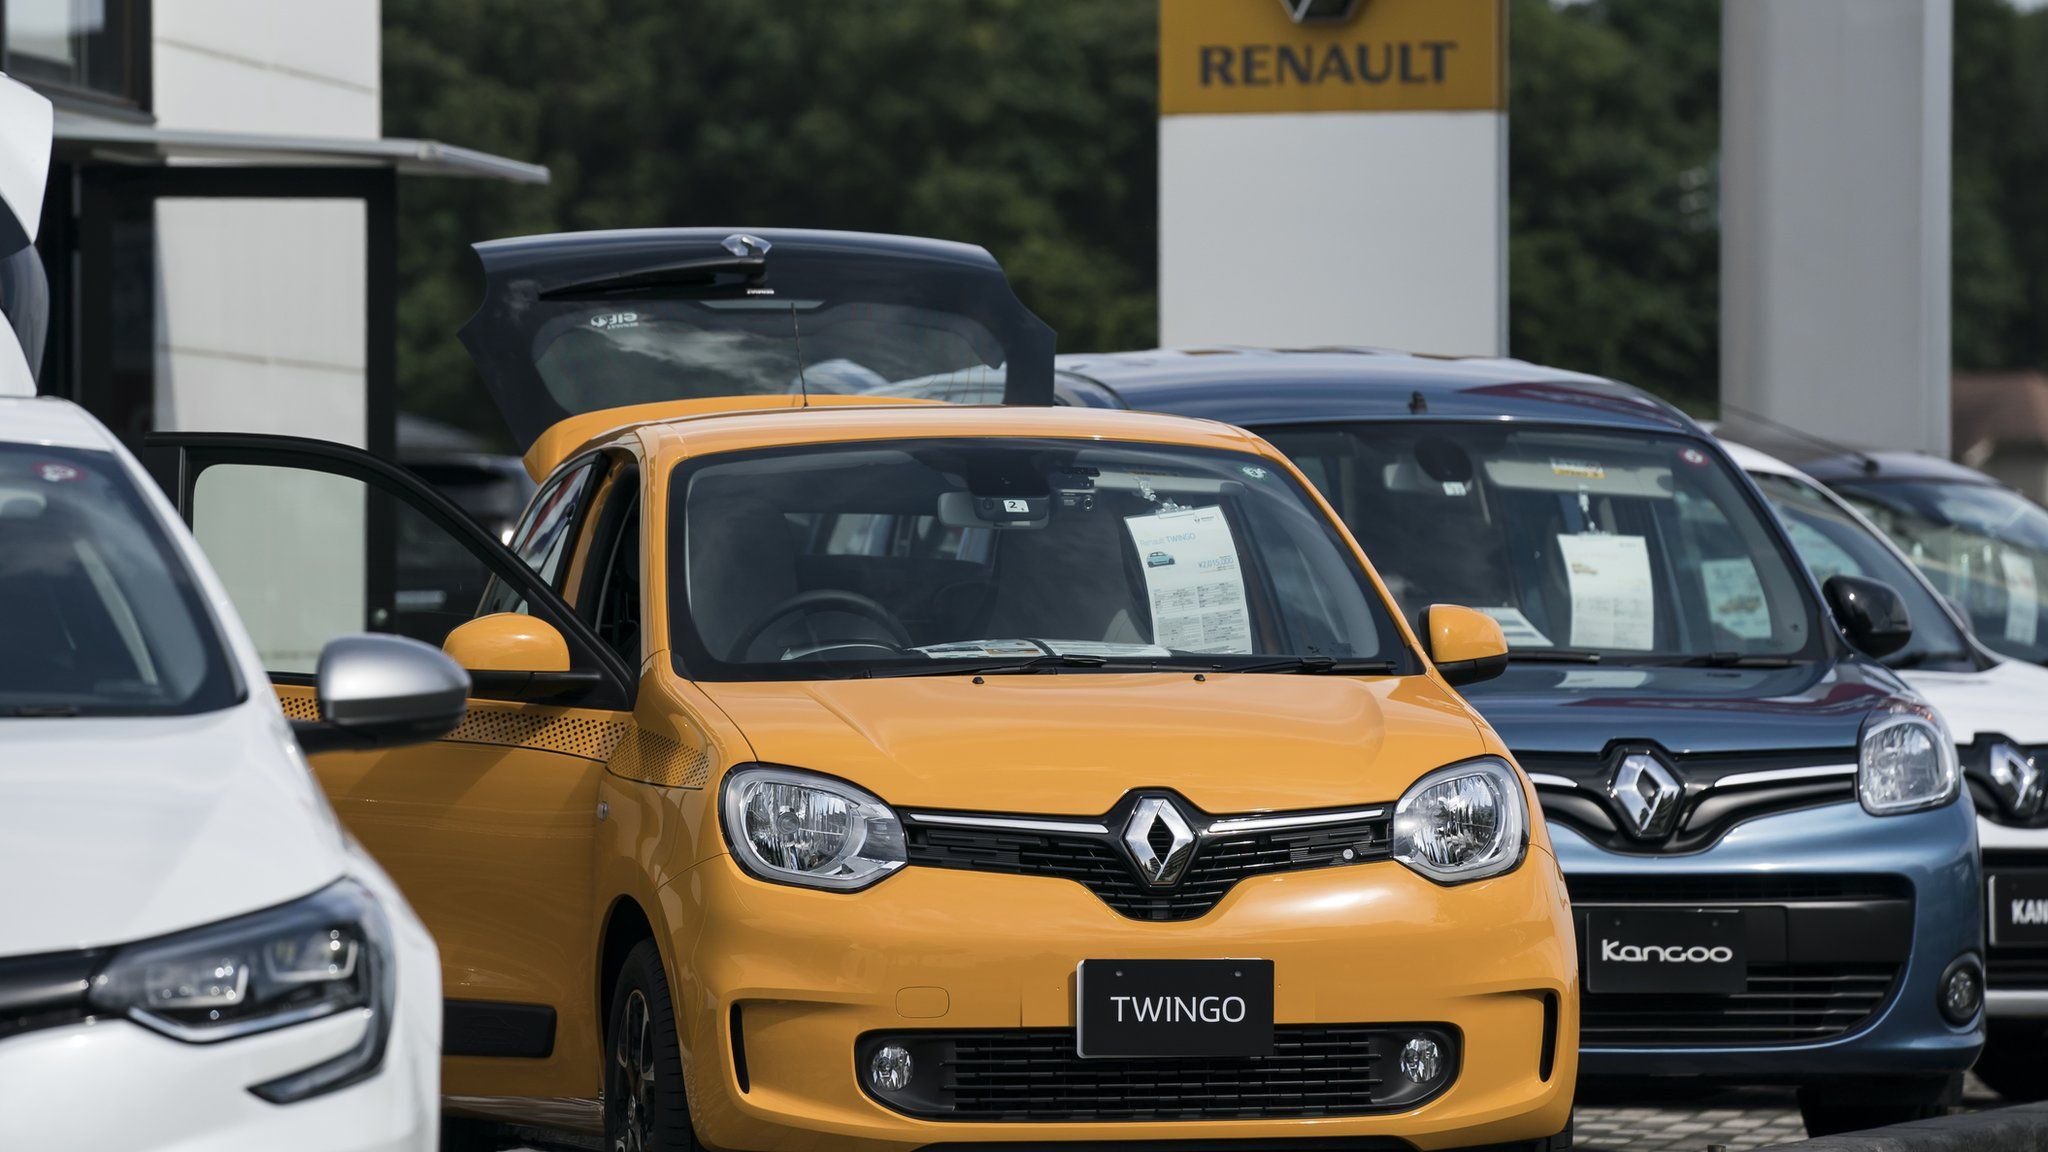 Renault cars